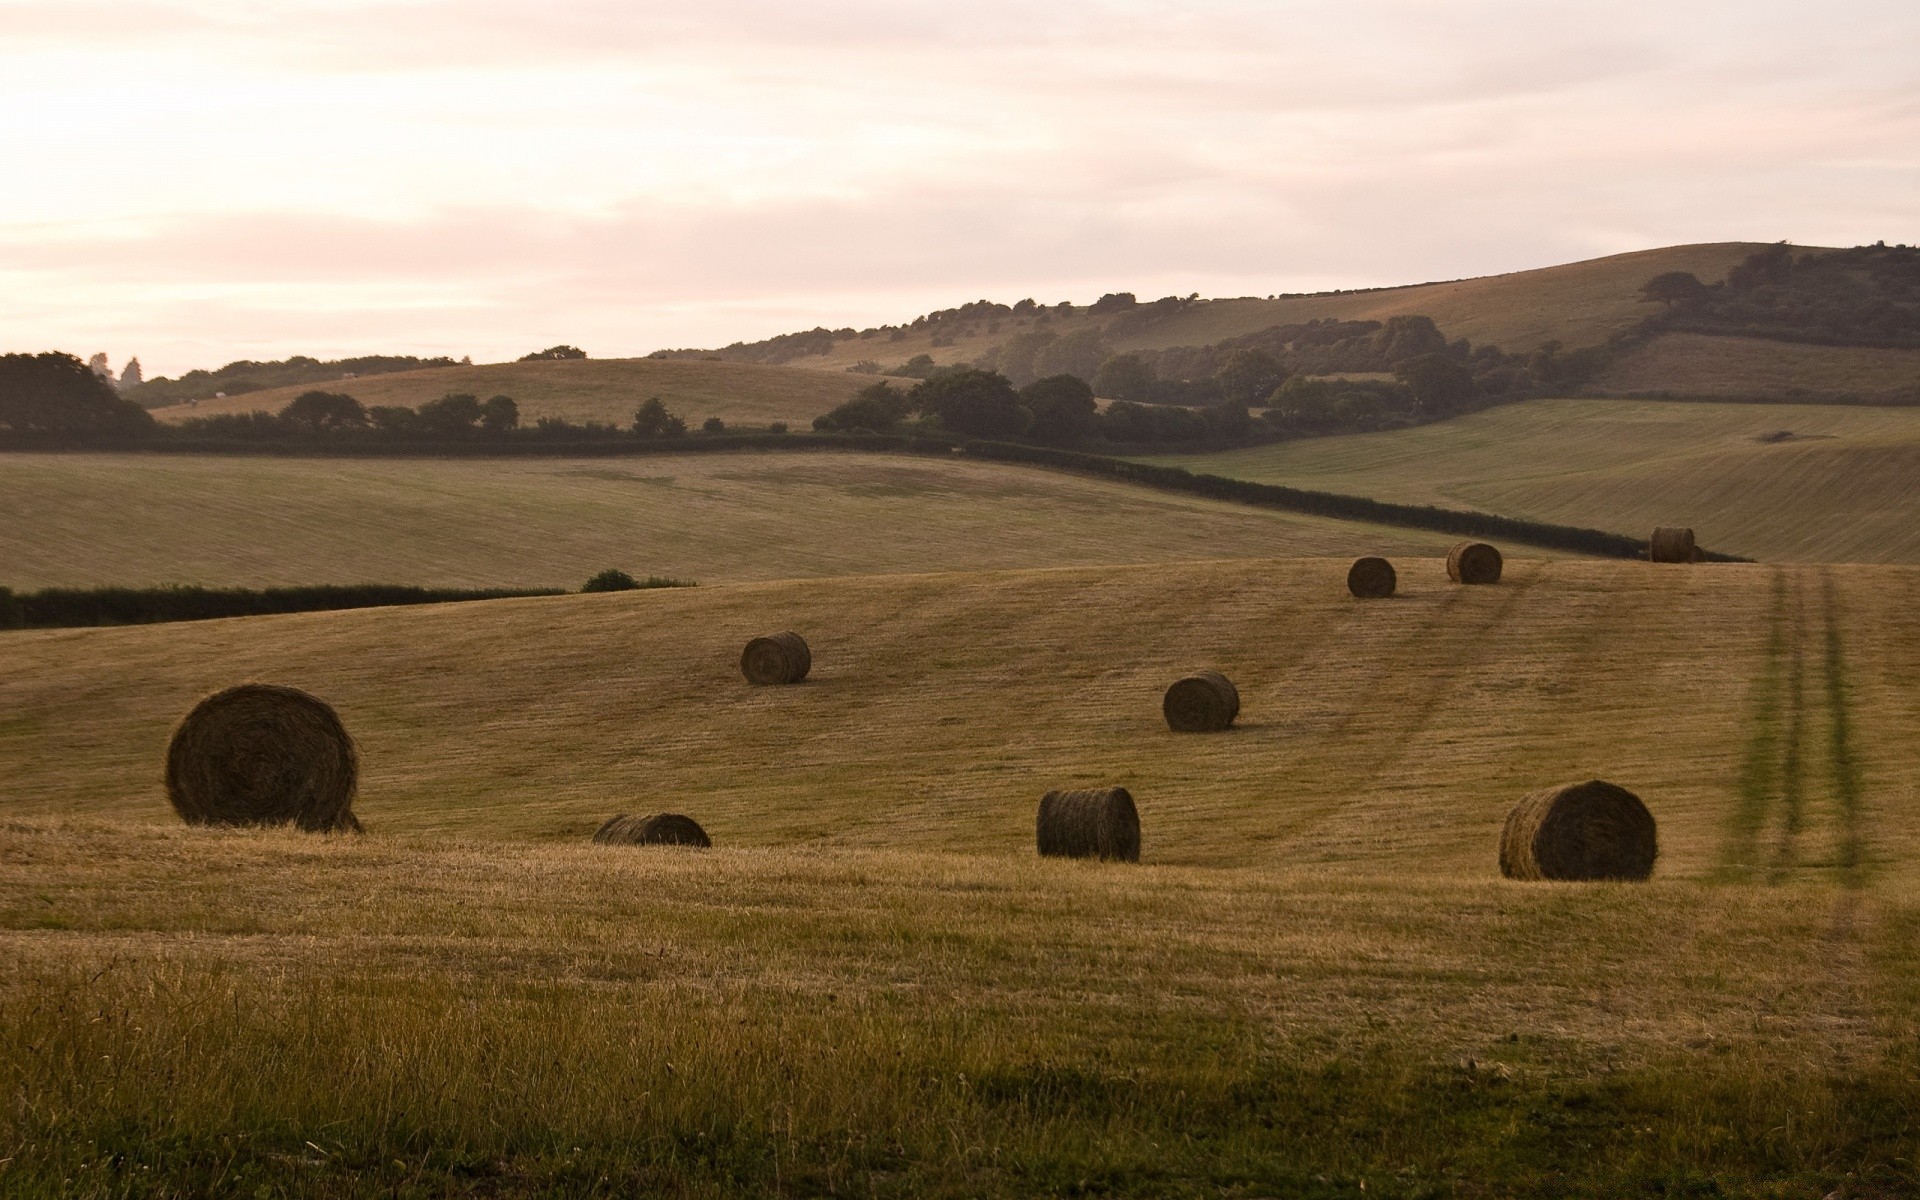 европа пейзаж сено возделываемые земли сельское хозяйство ферма бэйл пастбища сельской местности холм закат поле пастбище соломы пшеницы небо на открытом воздухе